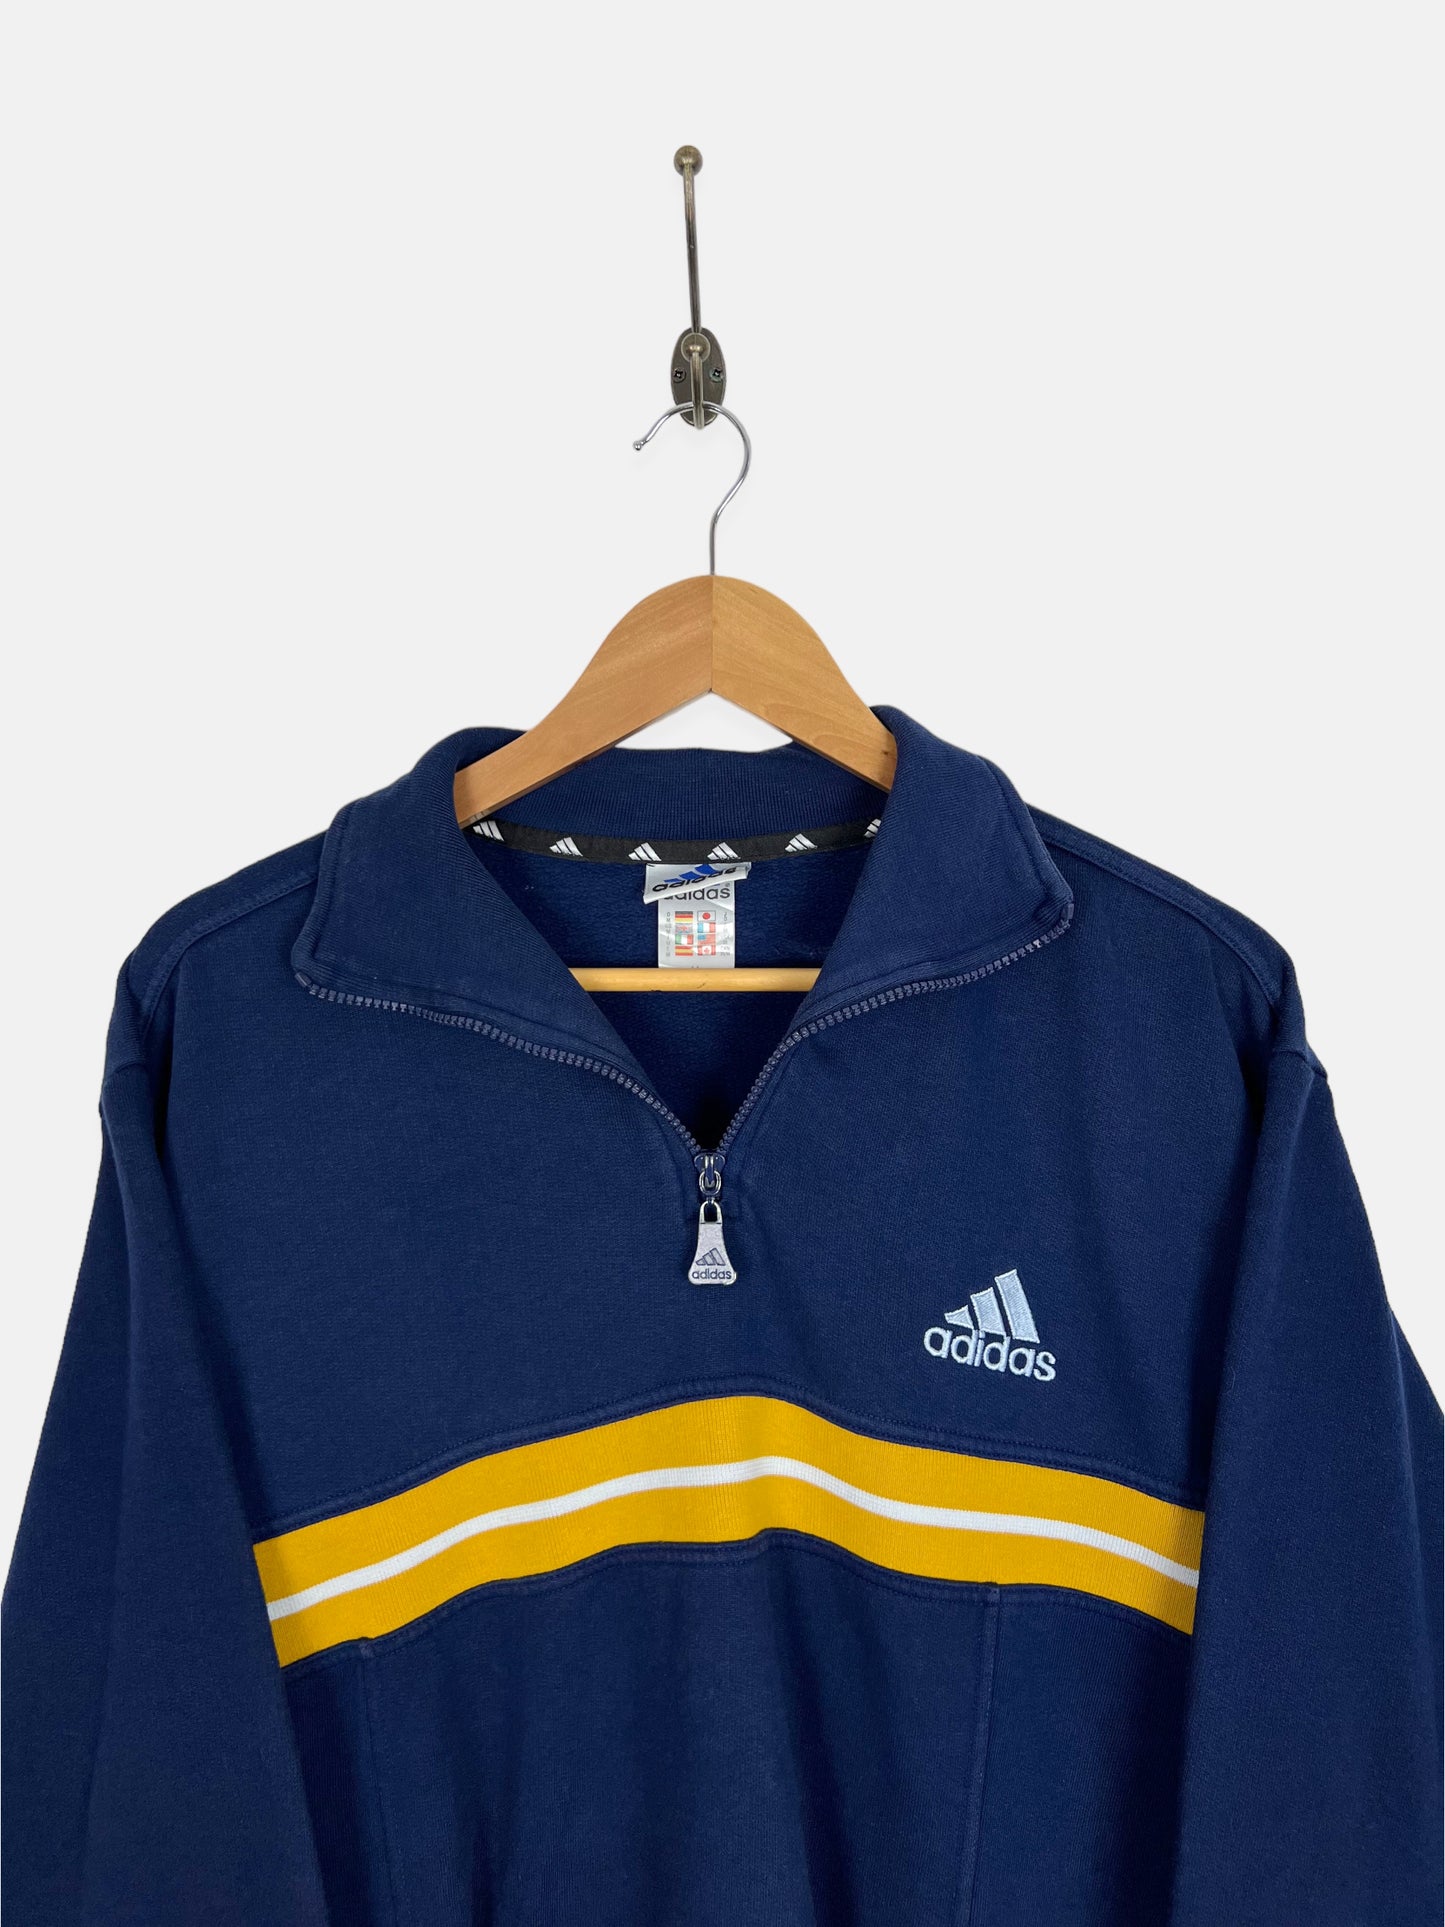 90's Adidas Embroidered Vintage Quarterzip Sweatshirt Size M